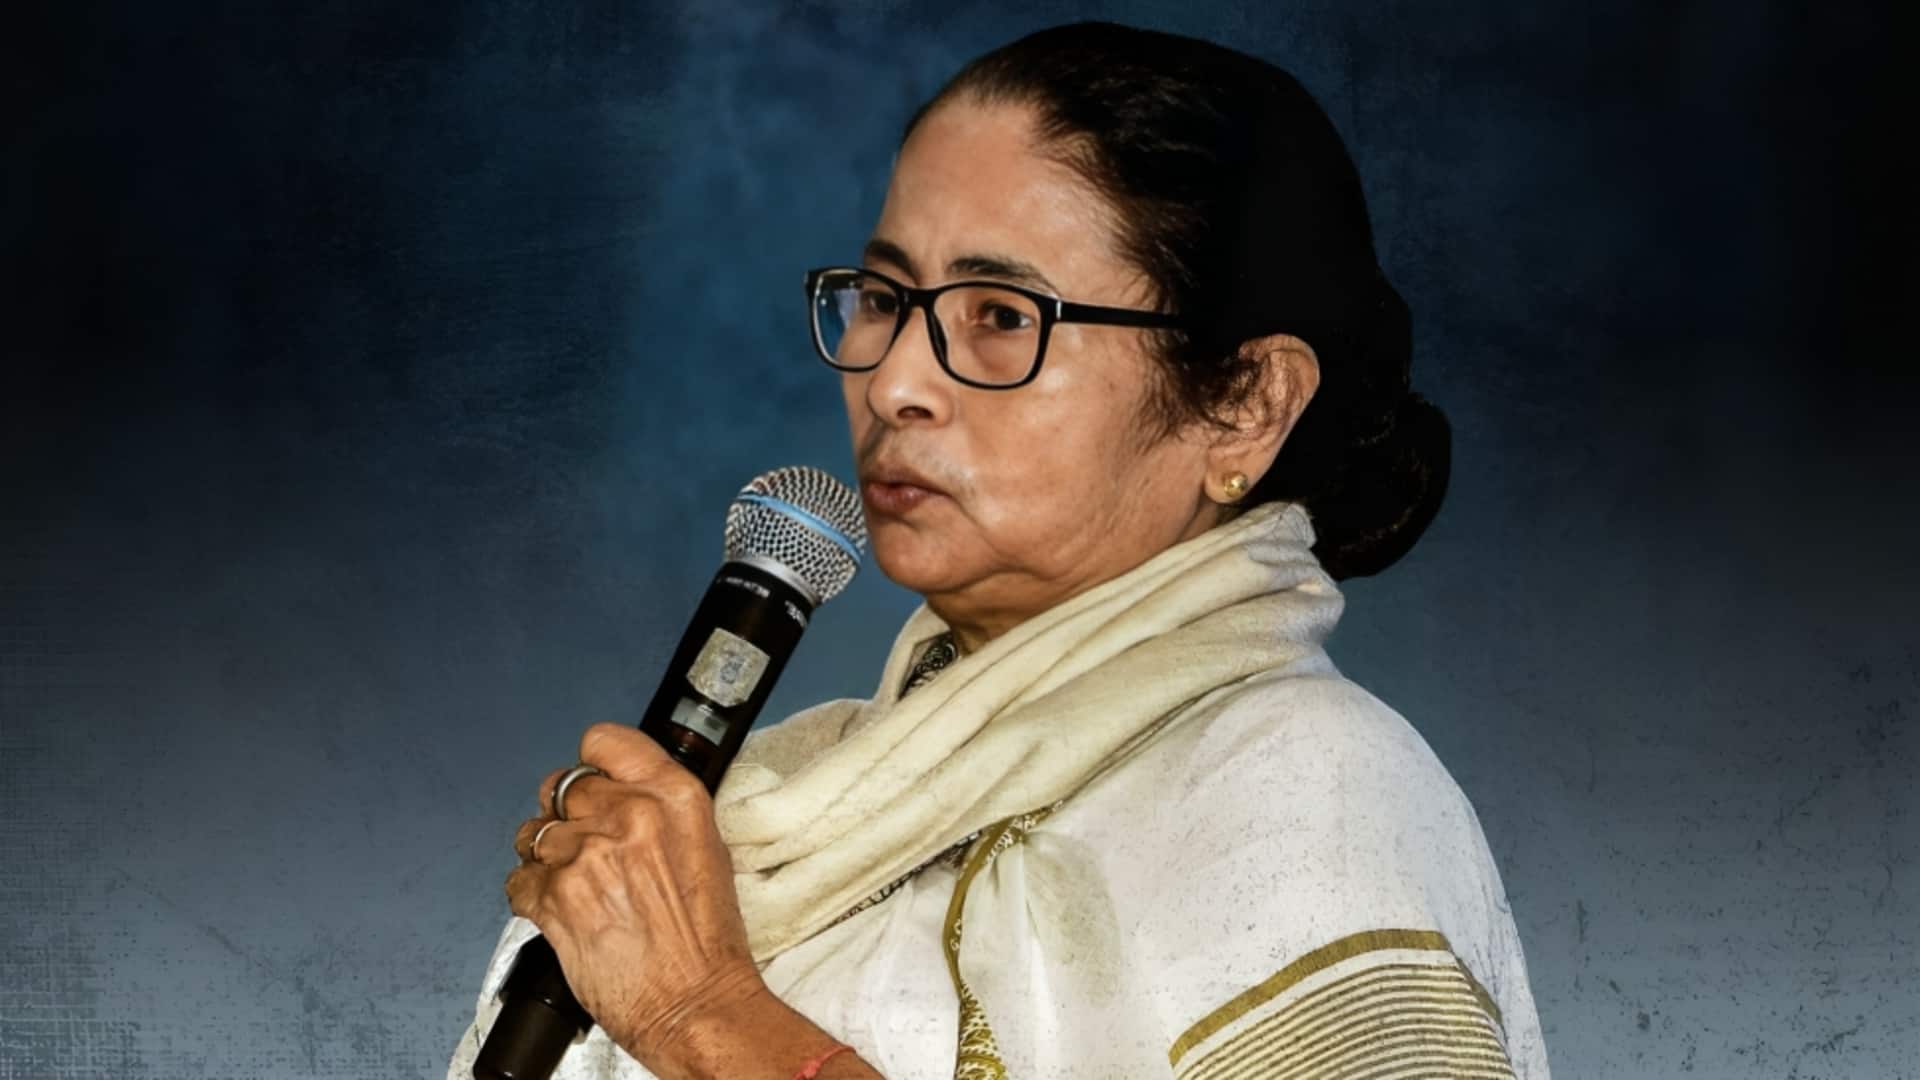 संदेशखाली मामला: ममता बनर्जी ने तोड़ी चुप्पी, भाजपा और RSS पर लगाया हिंसा भड़काने का आरोप